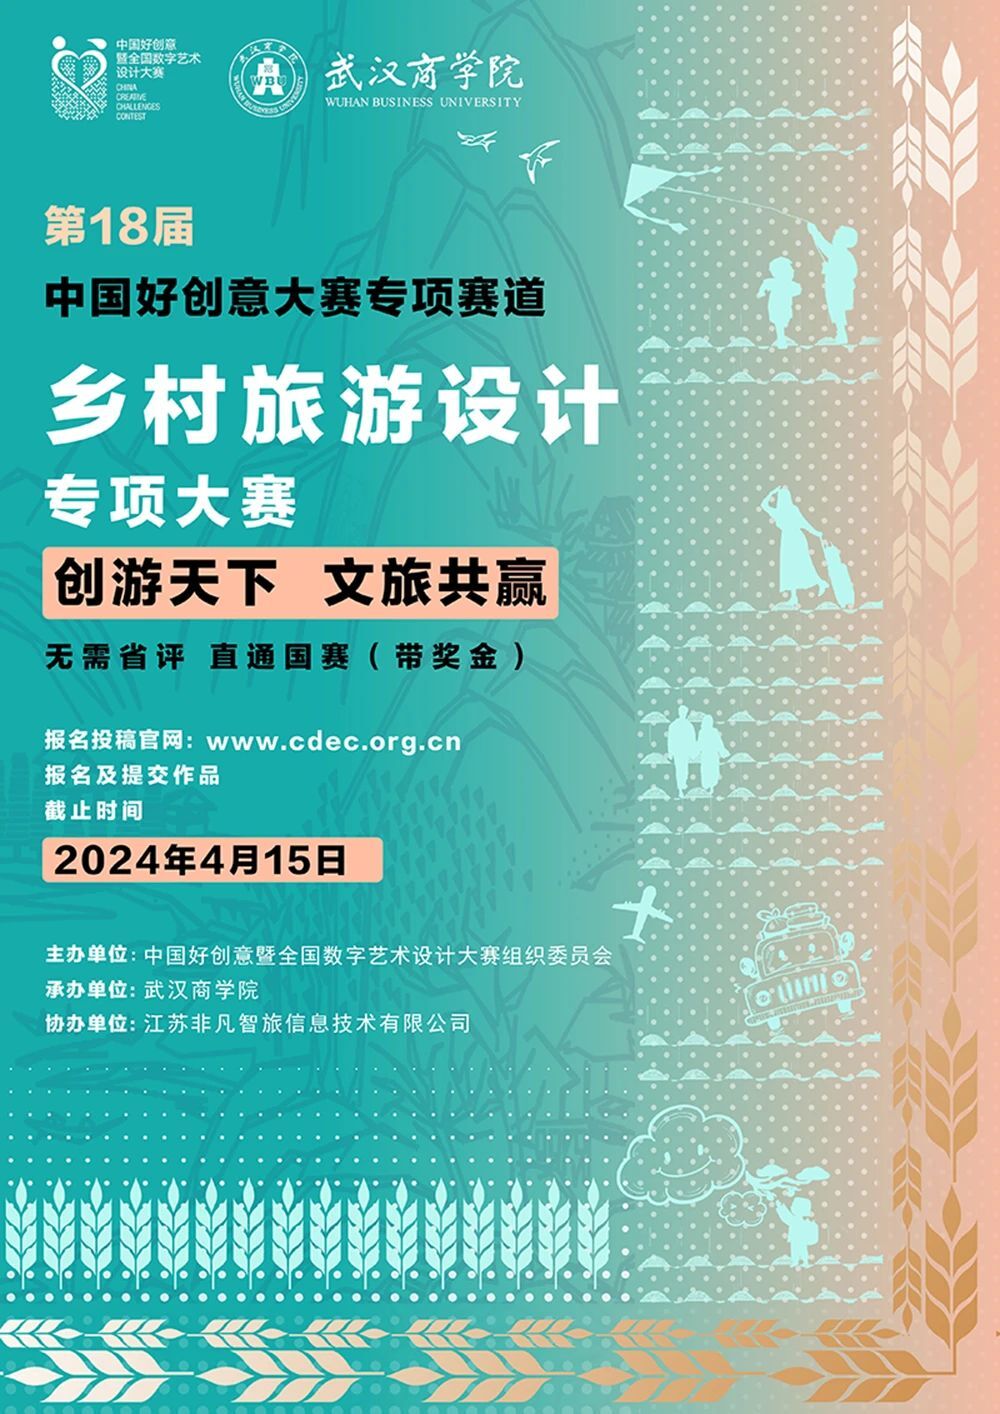 2024中国好创意暨全国数字艺术设计大赛-乡村旅游设计专项大赛-CNYISAI艺赛